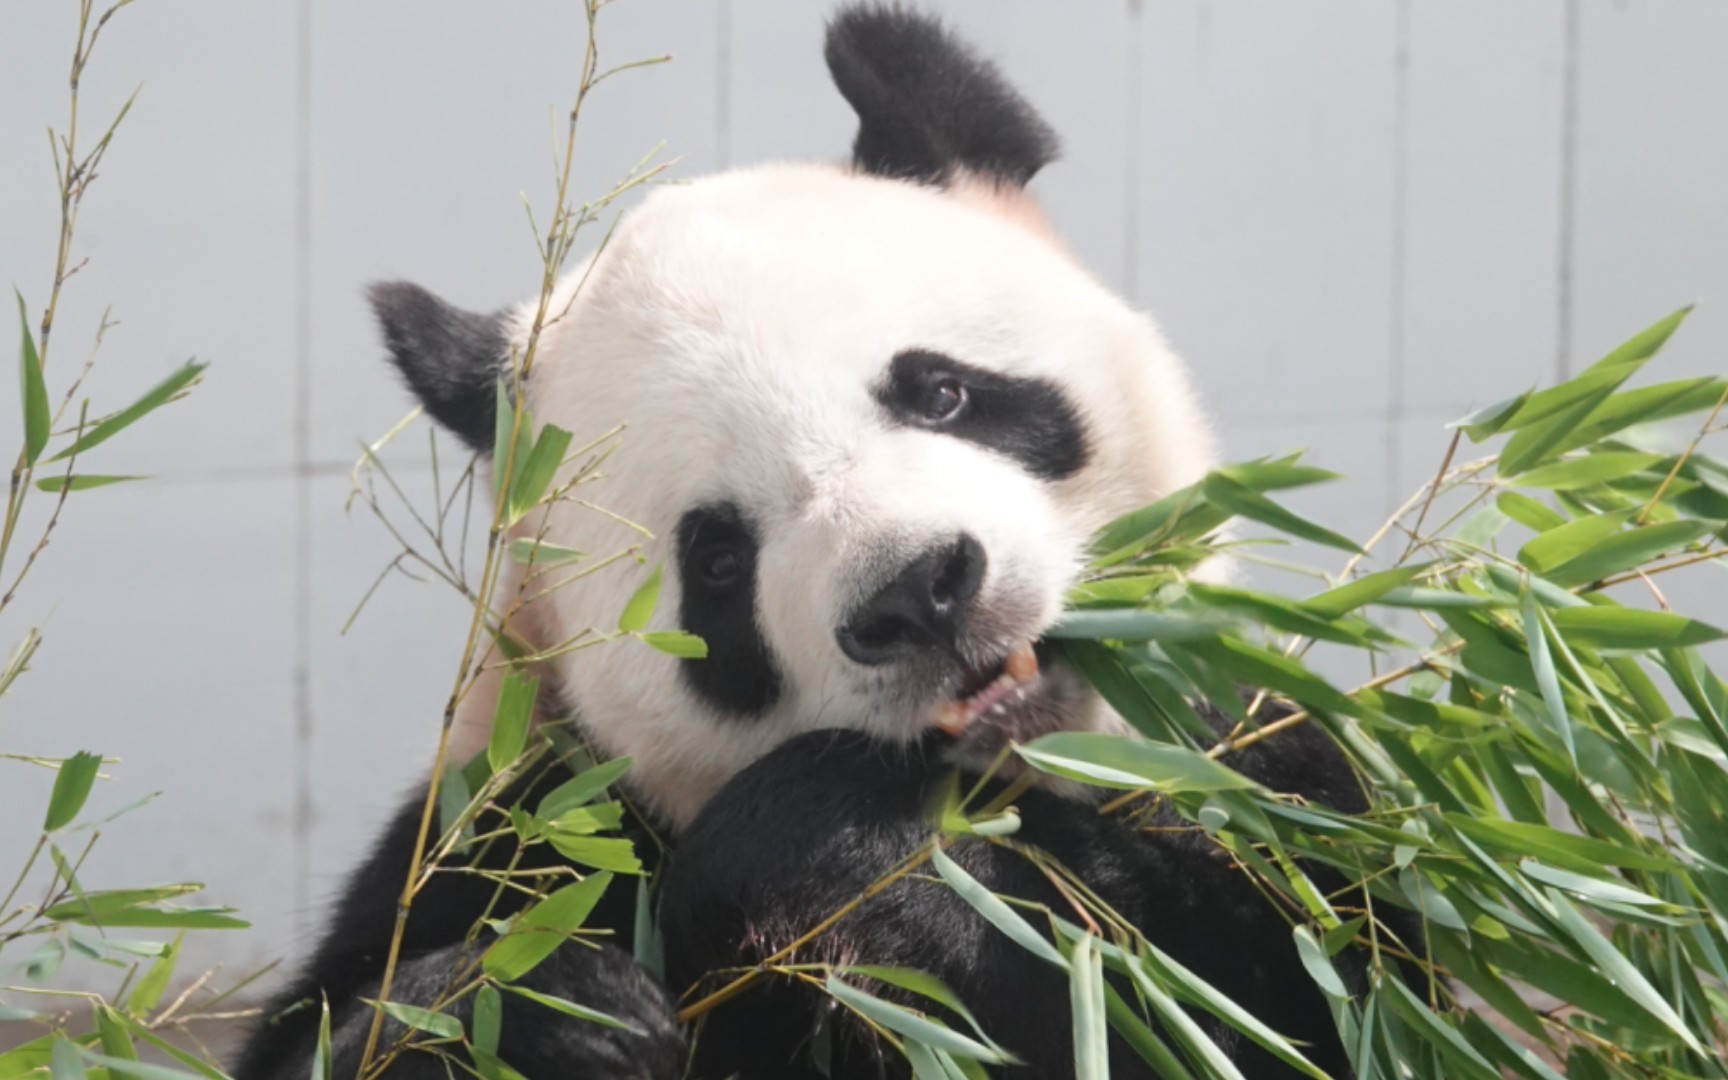 [大熊猫娅乐乐]乐乐是我见过最乖巧最温柔的大熊猫,笋季结束开始吃